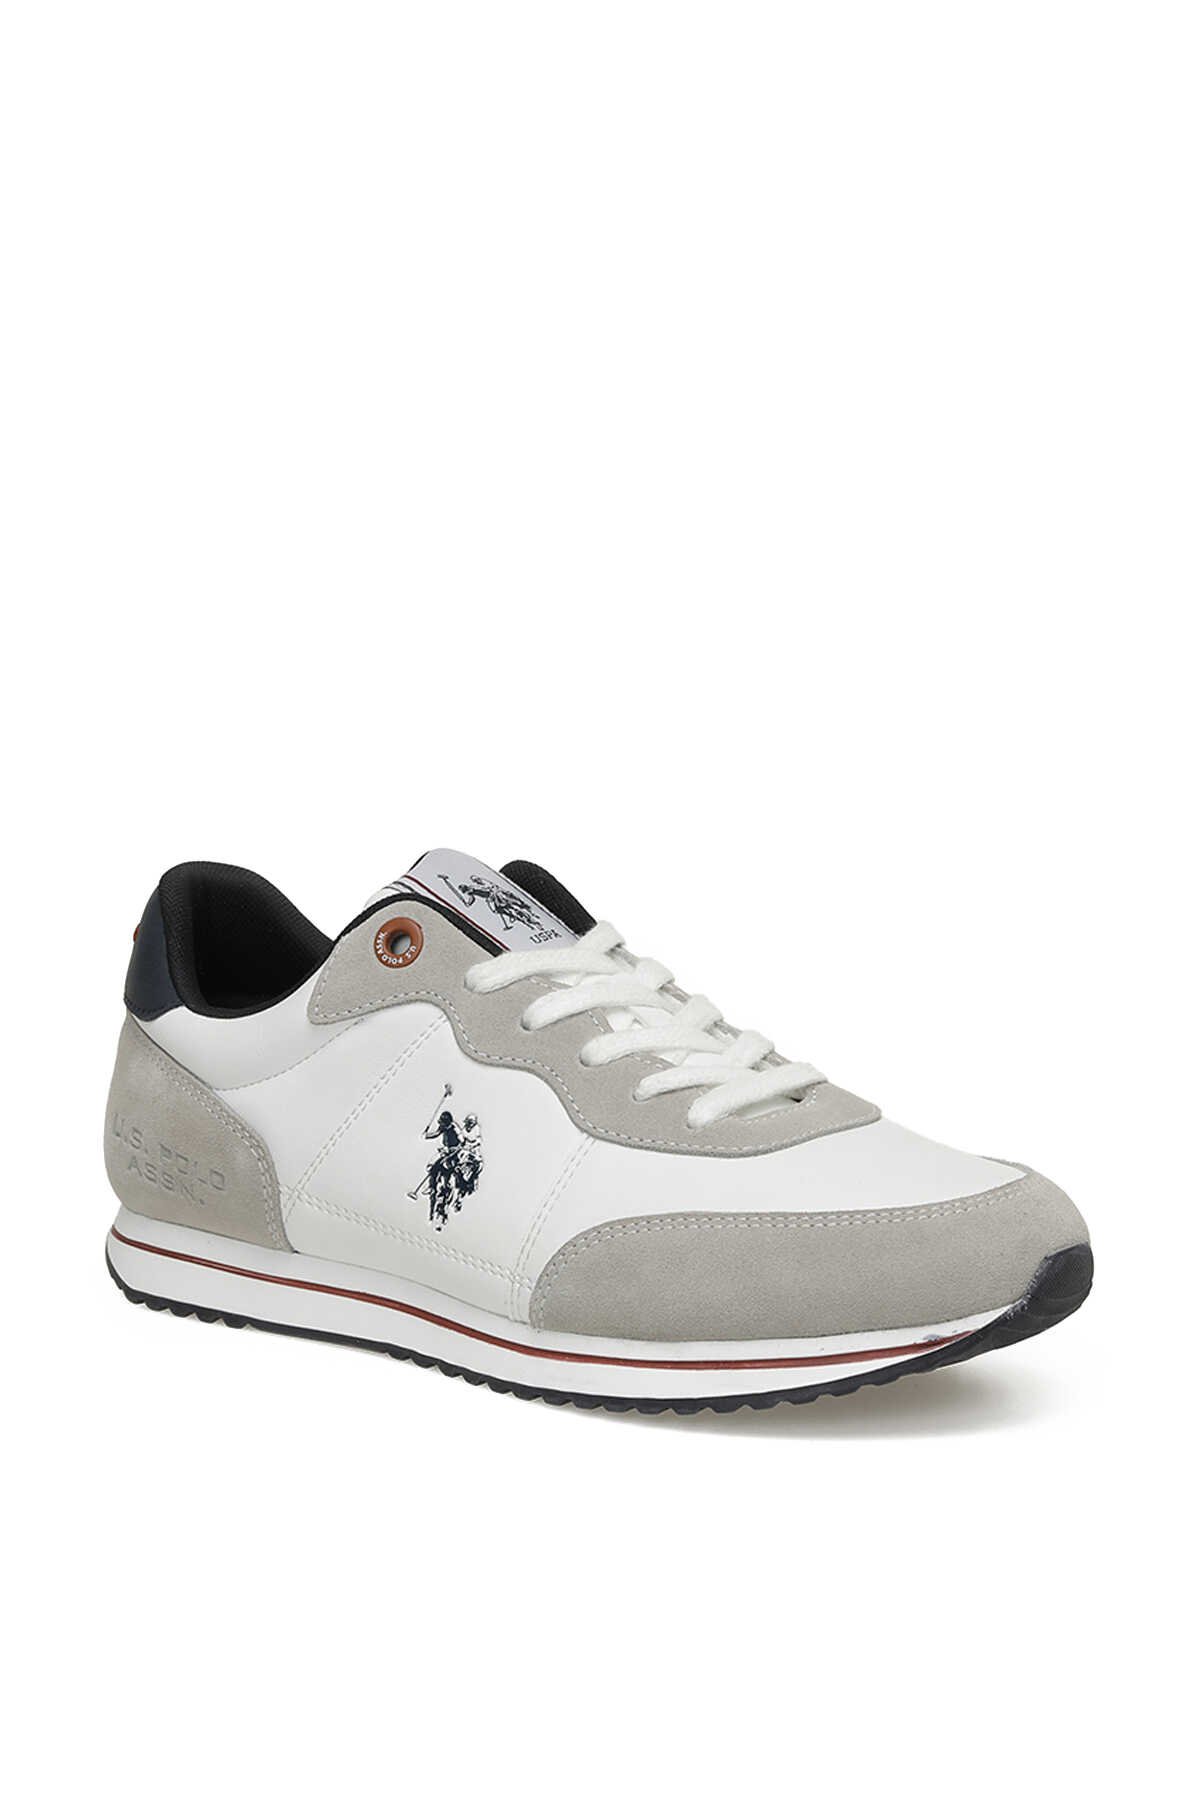 U.S. Polo Assn. - U.S. Polo Assn. PABLO 3PR Sneaker Erkek Ayakkabı Beyaz